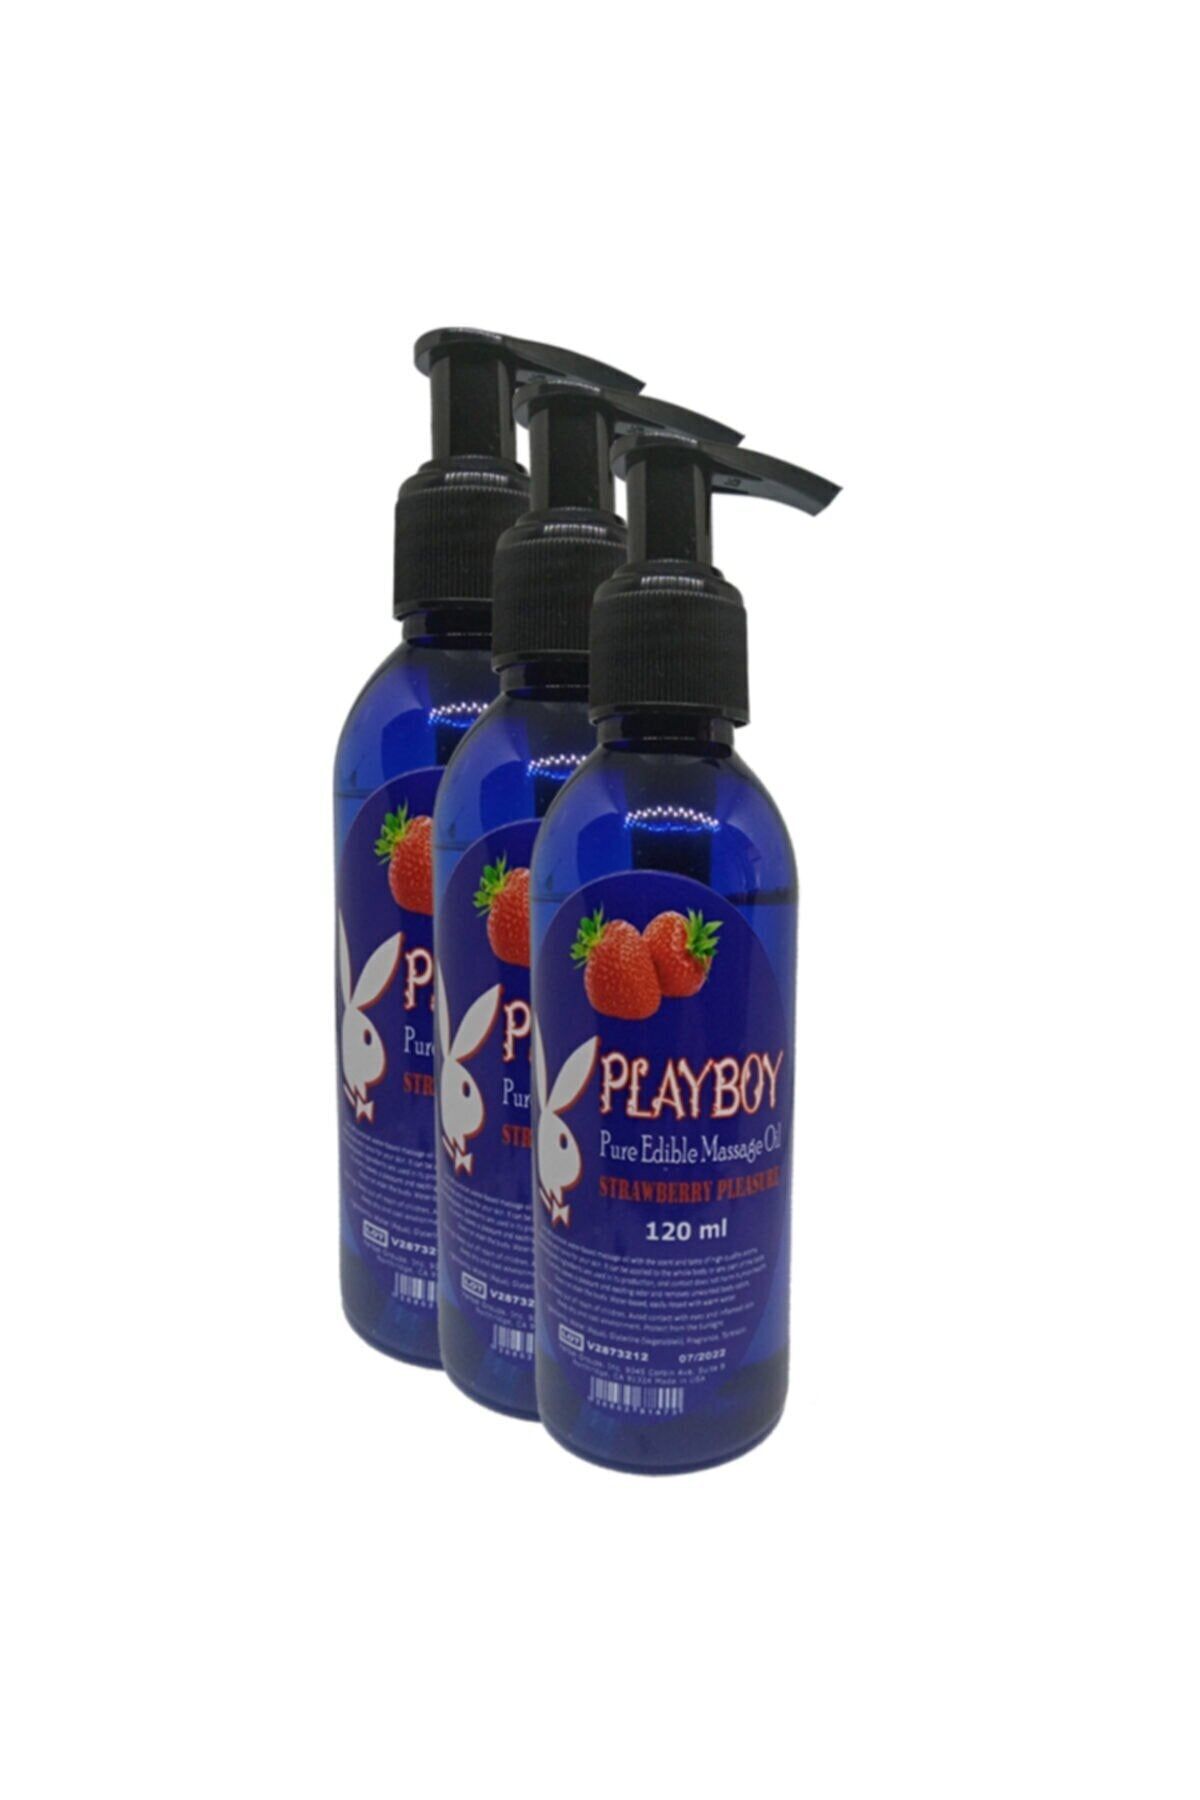 Playboy Pure Aromaterapi Massage Oil 120ml Çilek Aromalı Masaj Yağı 3 Adet